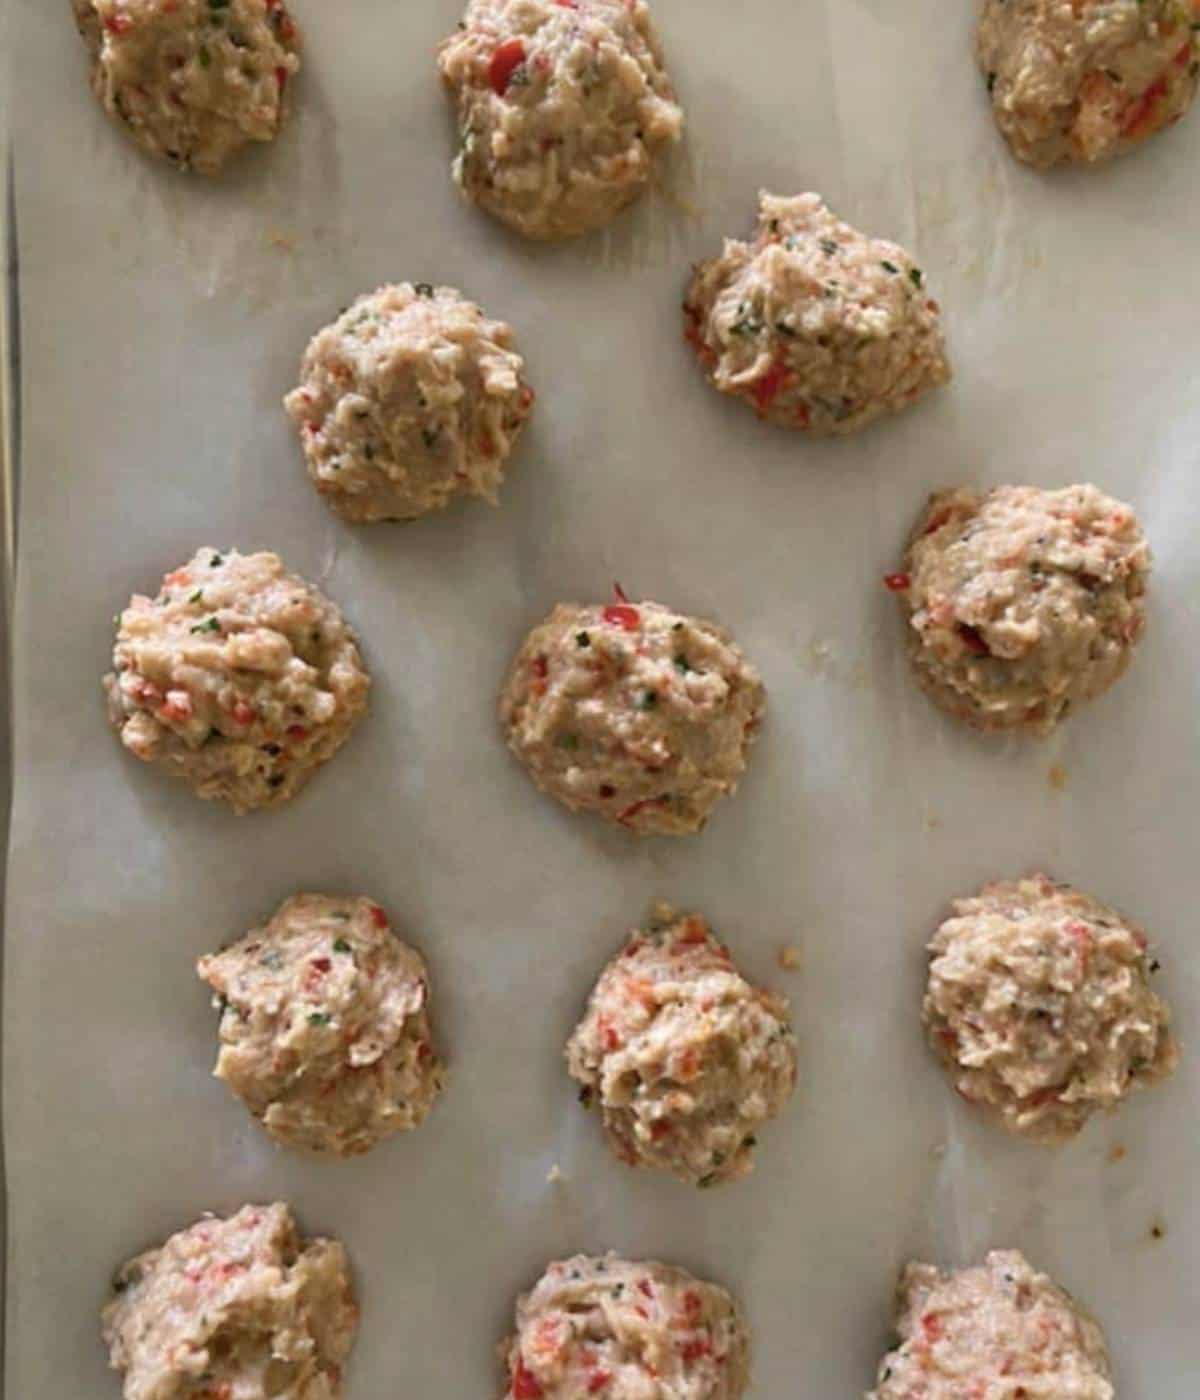 Mediterranean chicken meatballs ready to bake.